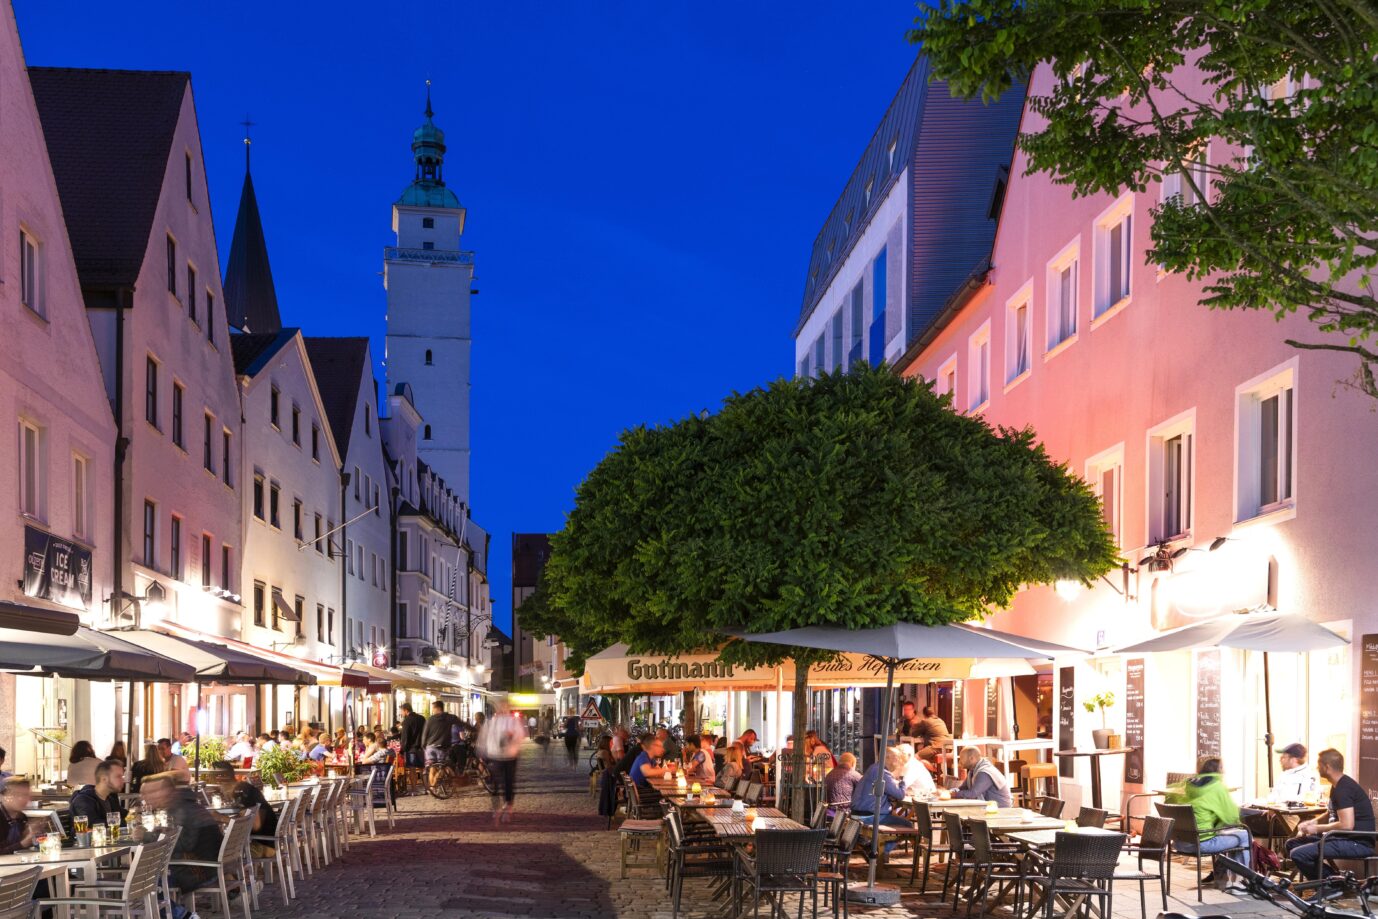 Szene aus dem abendlichen Ingolstadt. Hier ist das Café Mohrenkopf beheimatet. Der Name bleibt trotz Anfeindungen